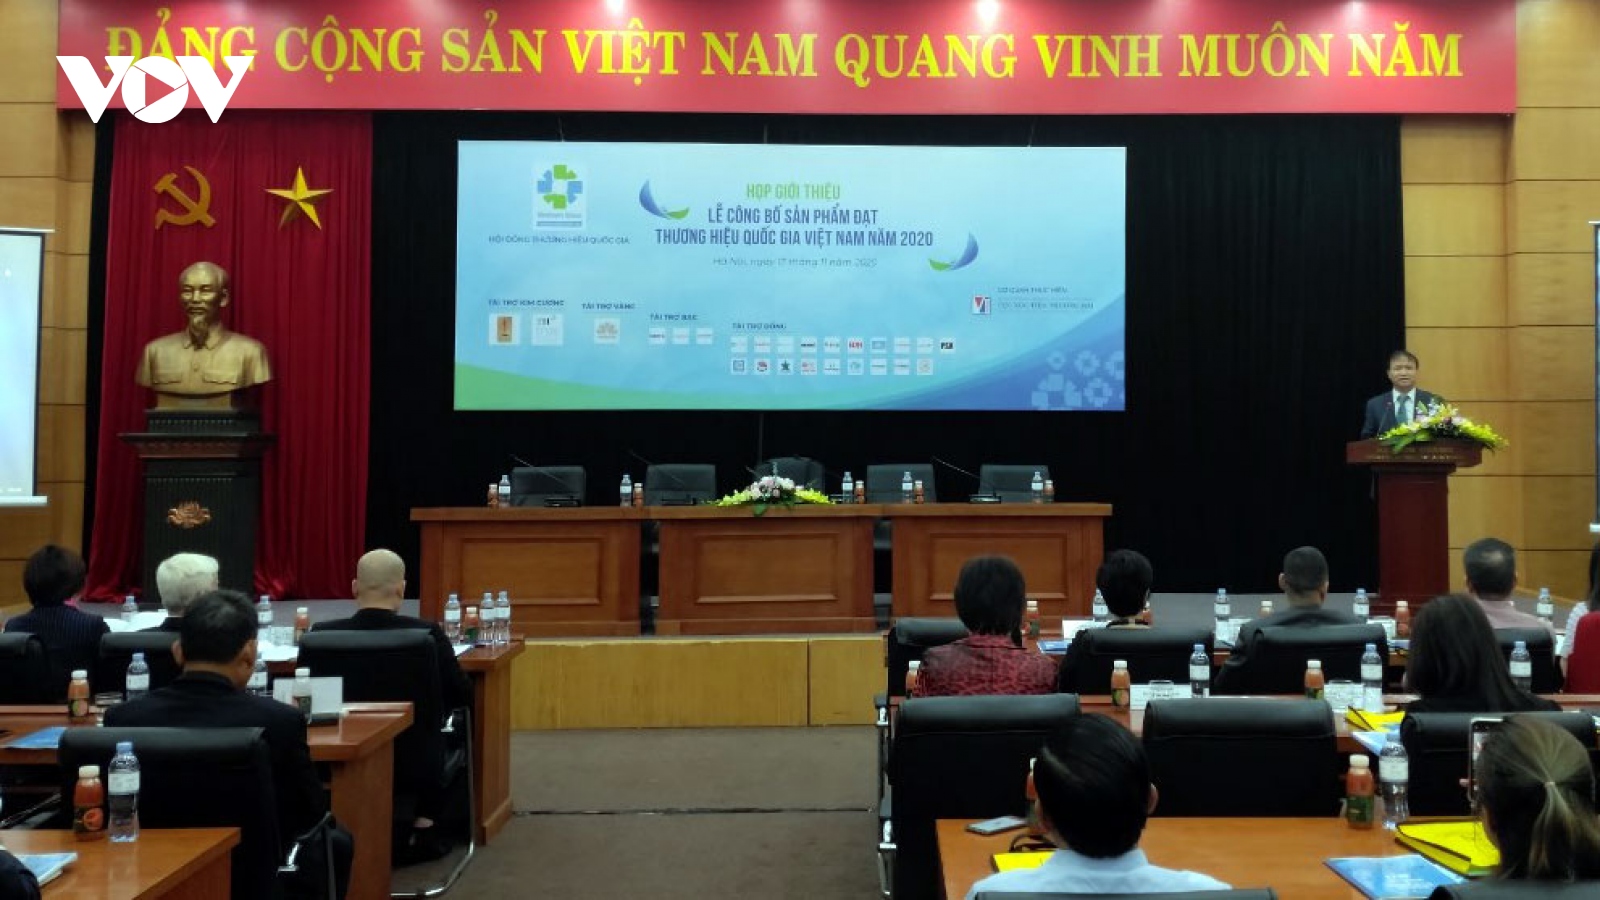 124 doanh nghiệp với 283 sản phẩm đạt Thương hiệu Quốc gia Việt Nam 2020